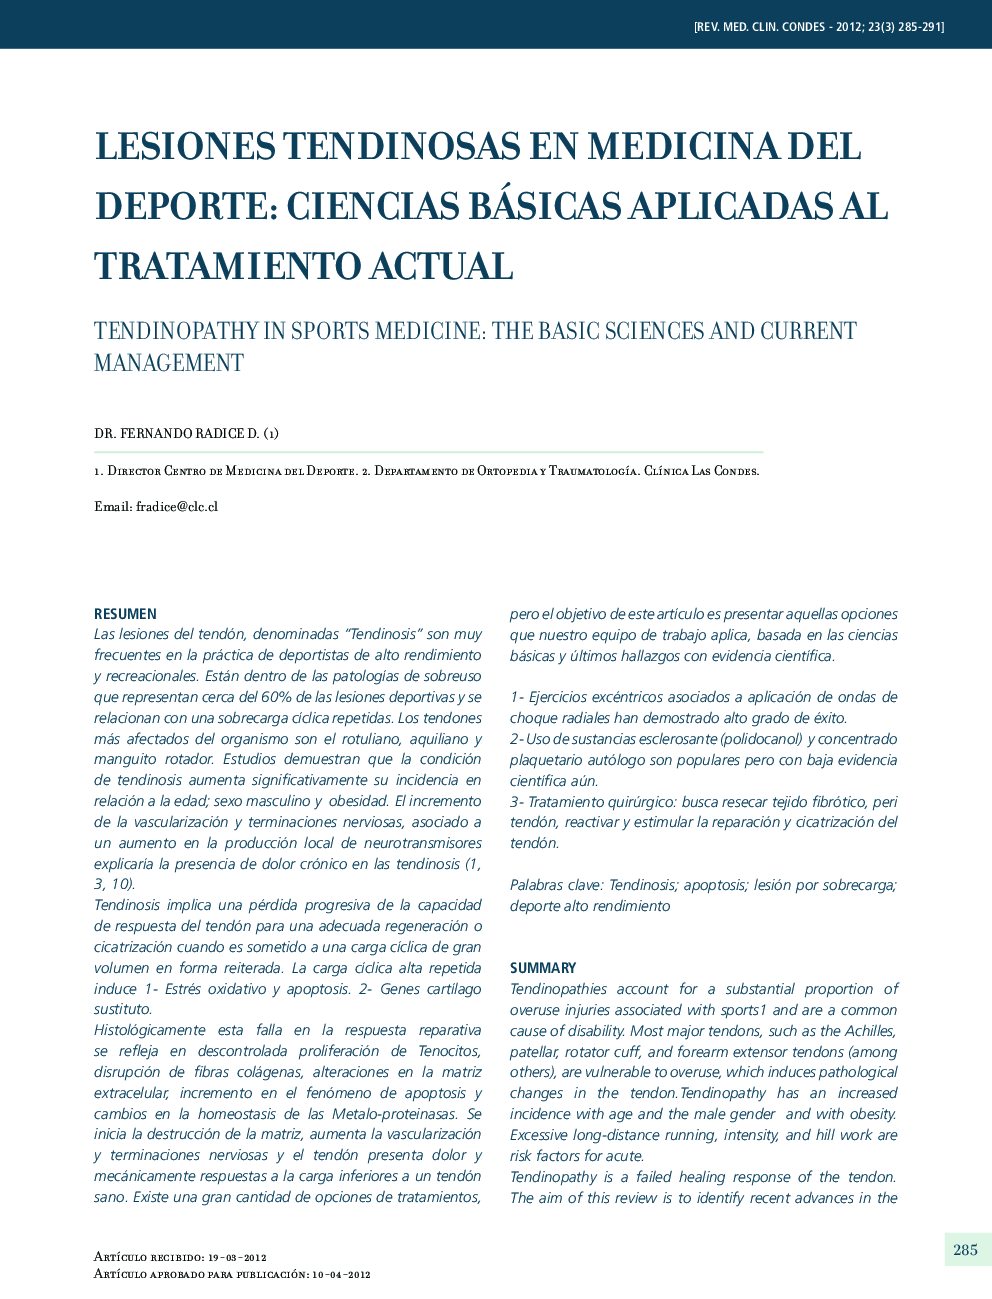 Lesiones tendinosas en medicina del deporte: Ciencias básicas aplicadas al tratamiento actual